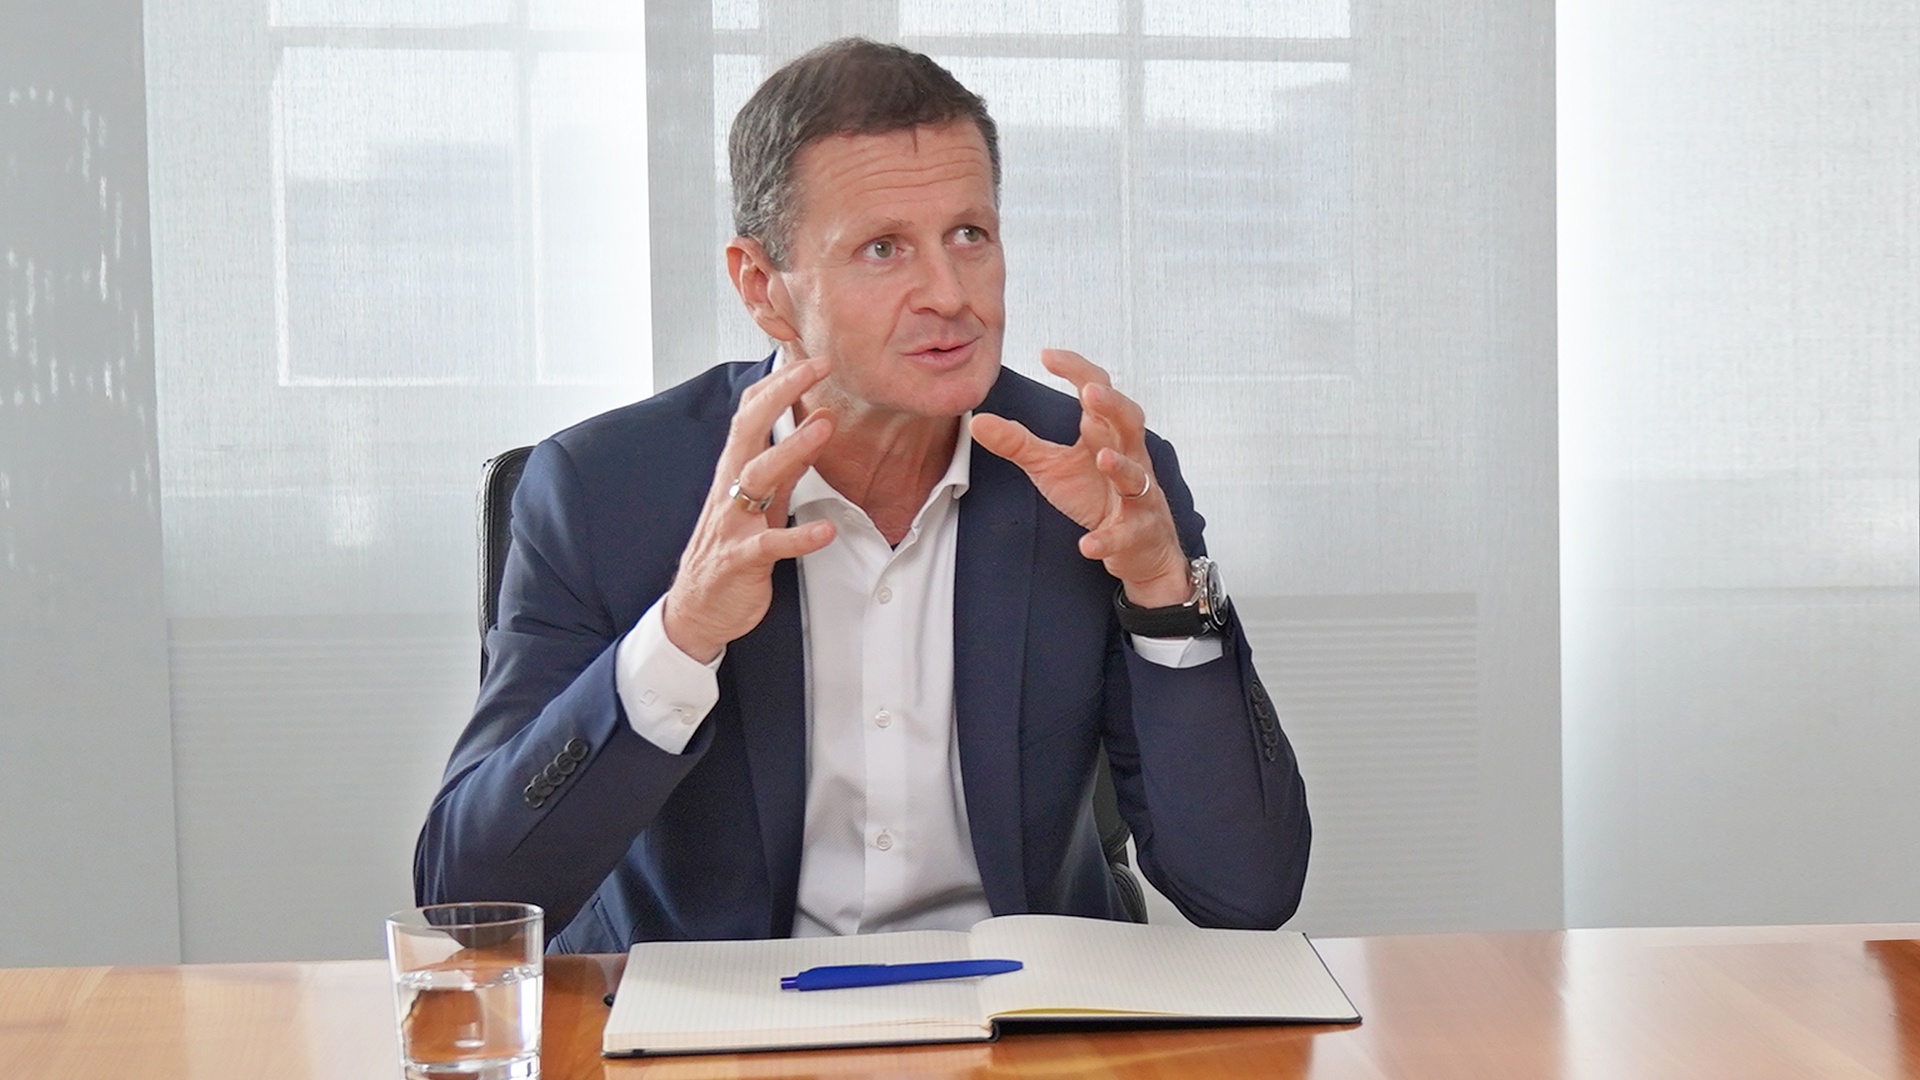 Frank Markus Weber, Finanzvorstand der Knorr-Bremse AG, sitzt gestikulierend an einem Besprechungstisch und gibt ein Interview.